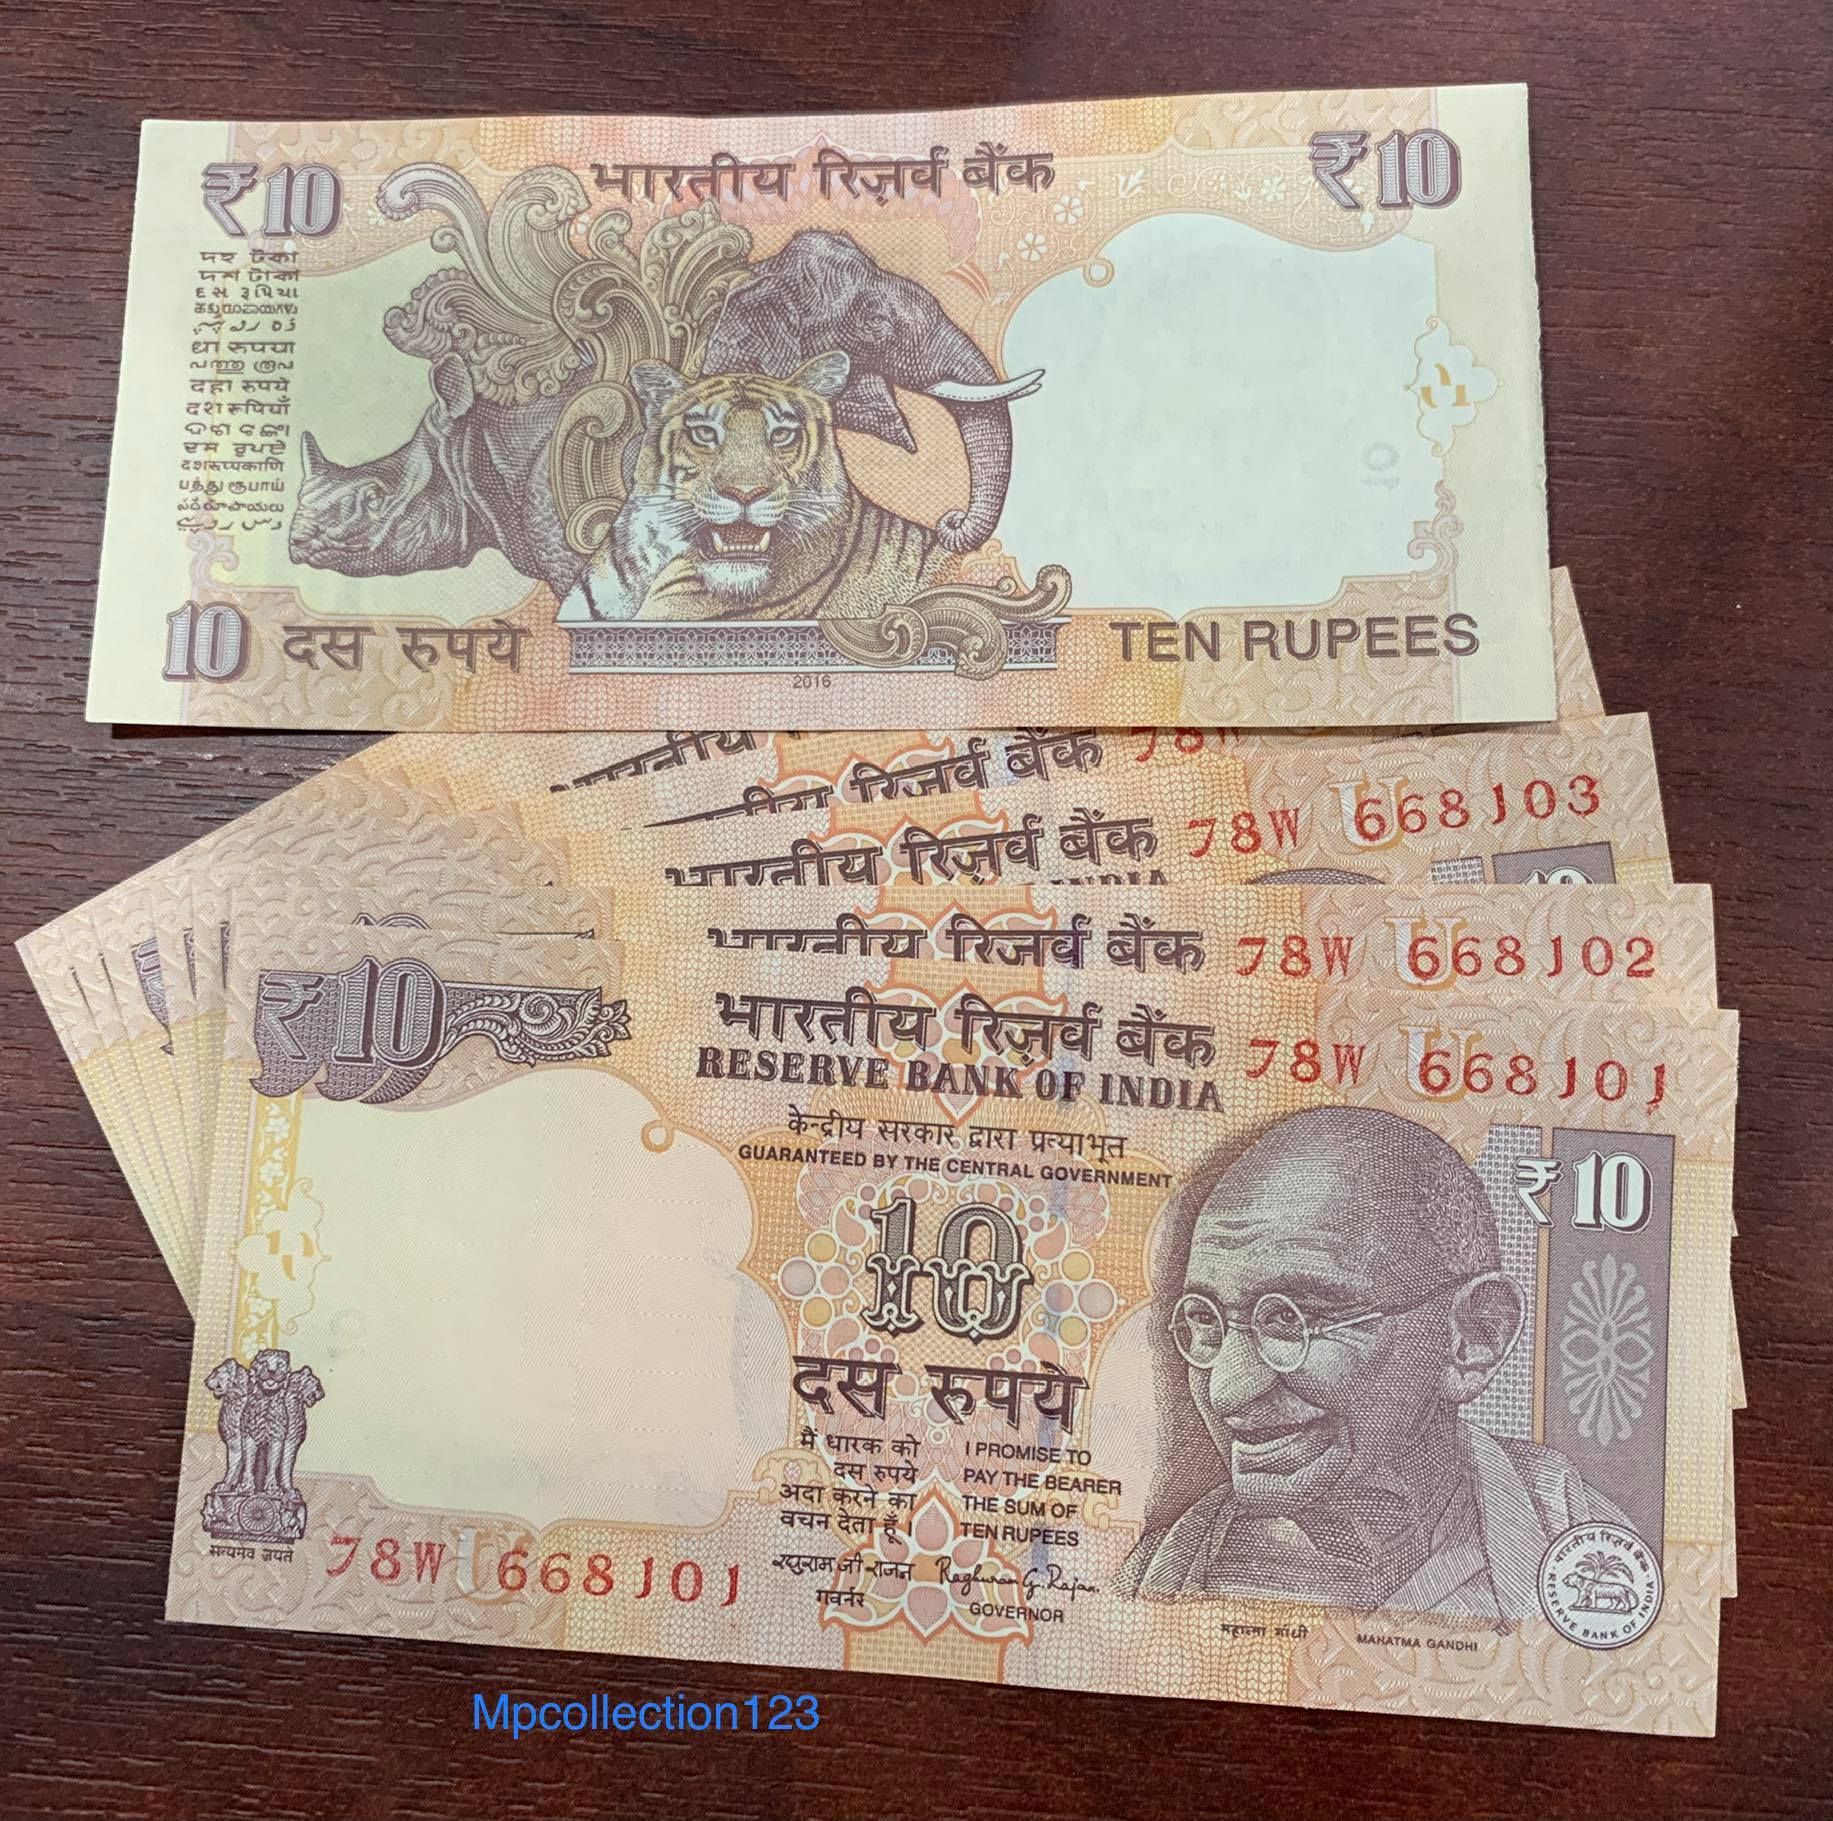 Tiền giấy hình con cọp của Ấn Độ 10 Rupees, tặng kèm bao nilong bảo quản